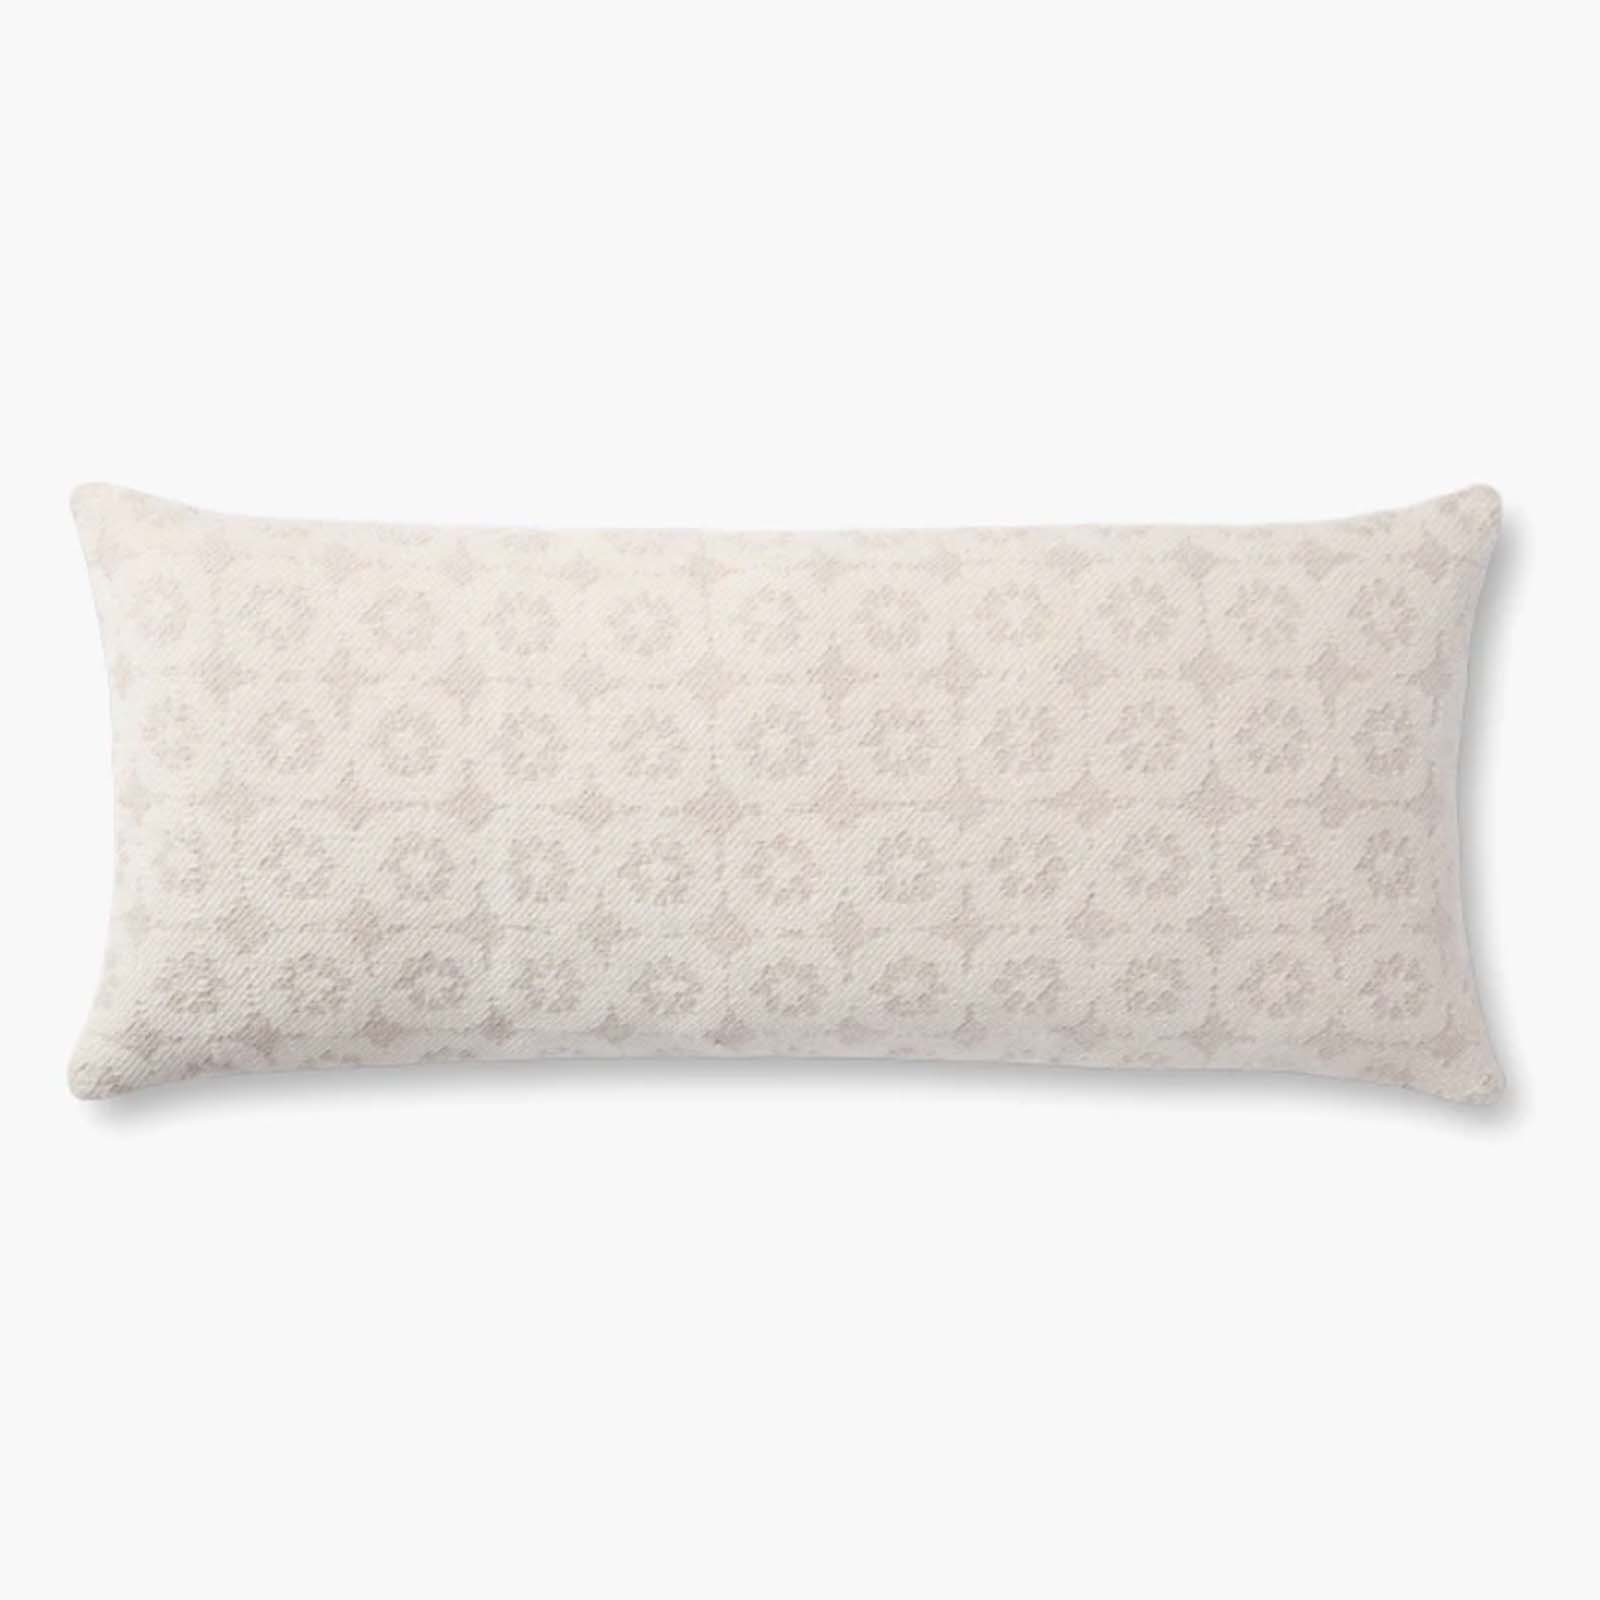 13" x 45" Pillow